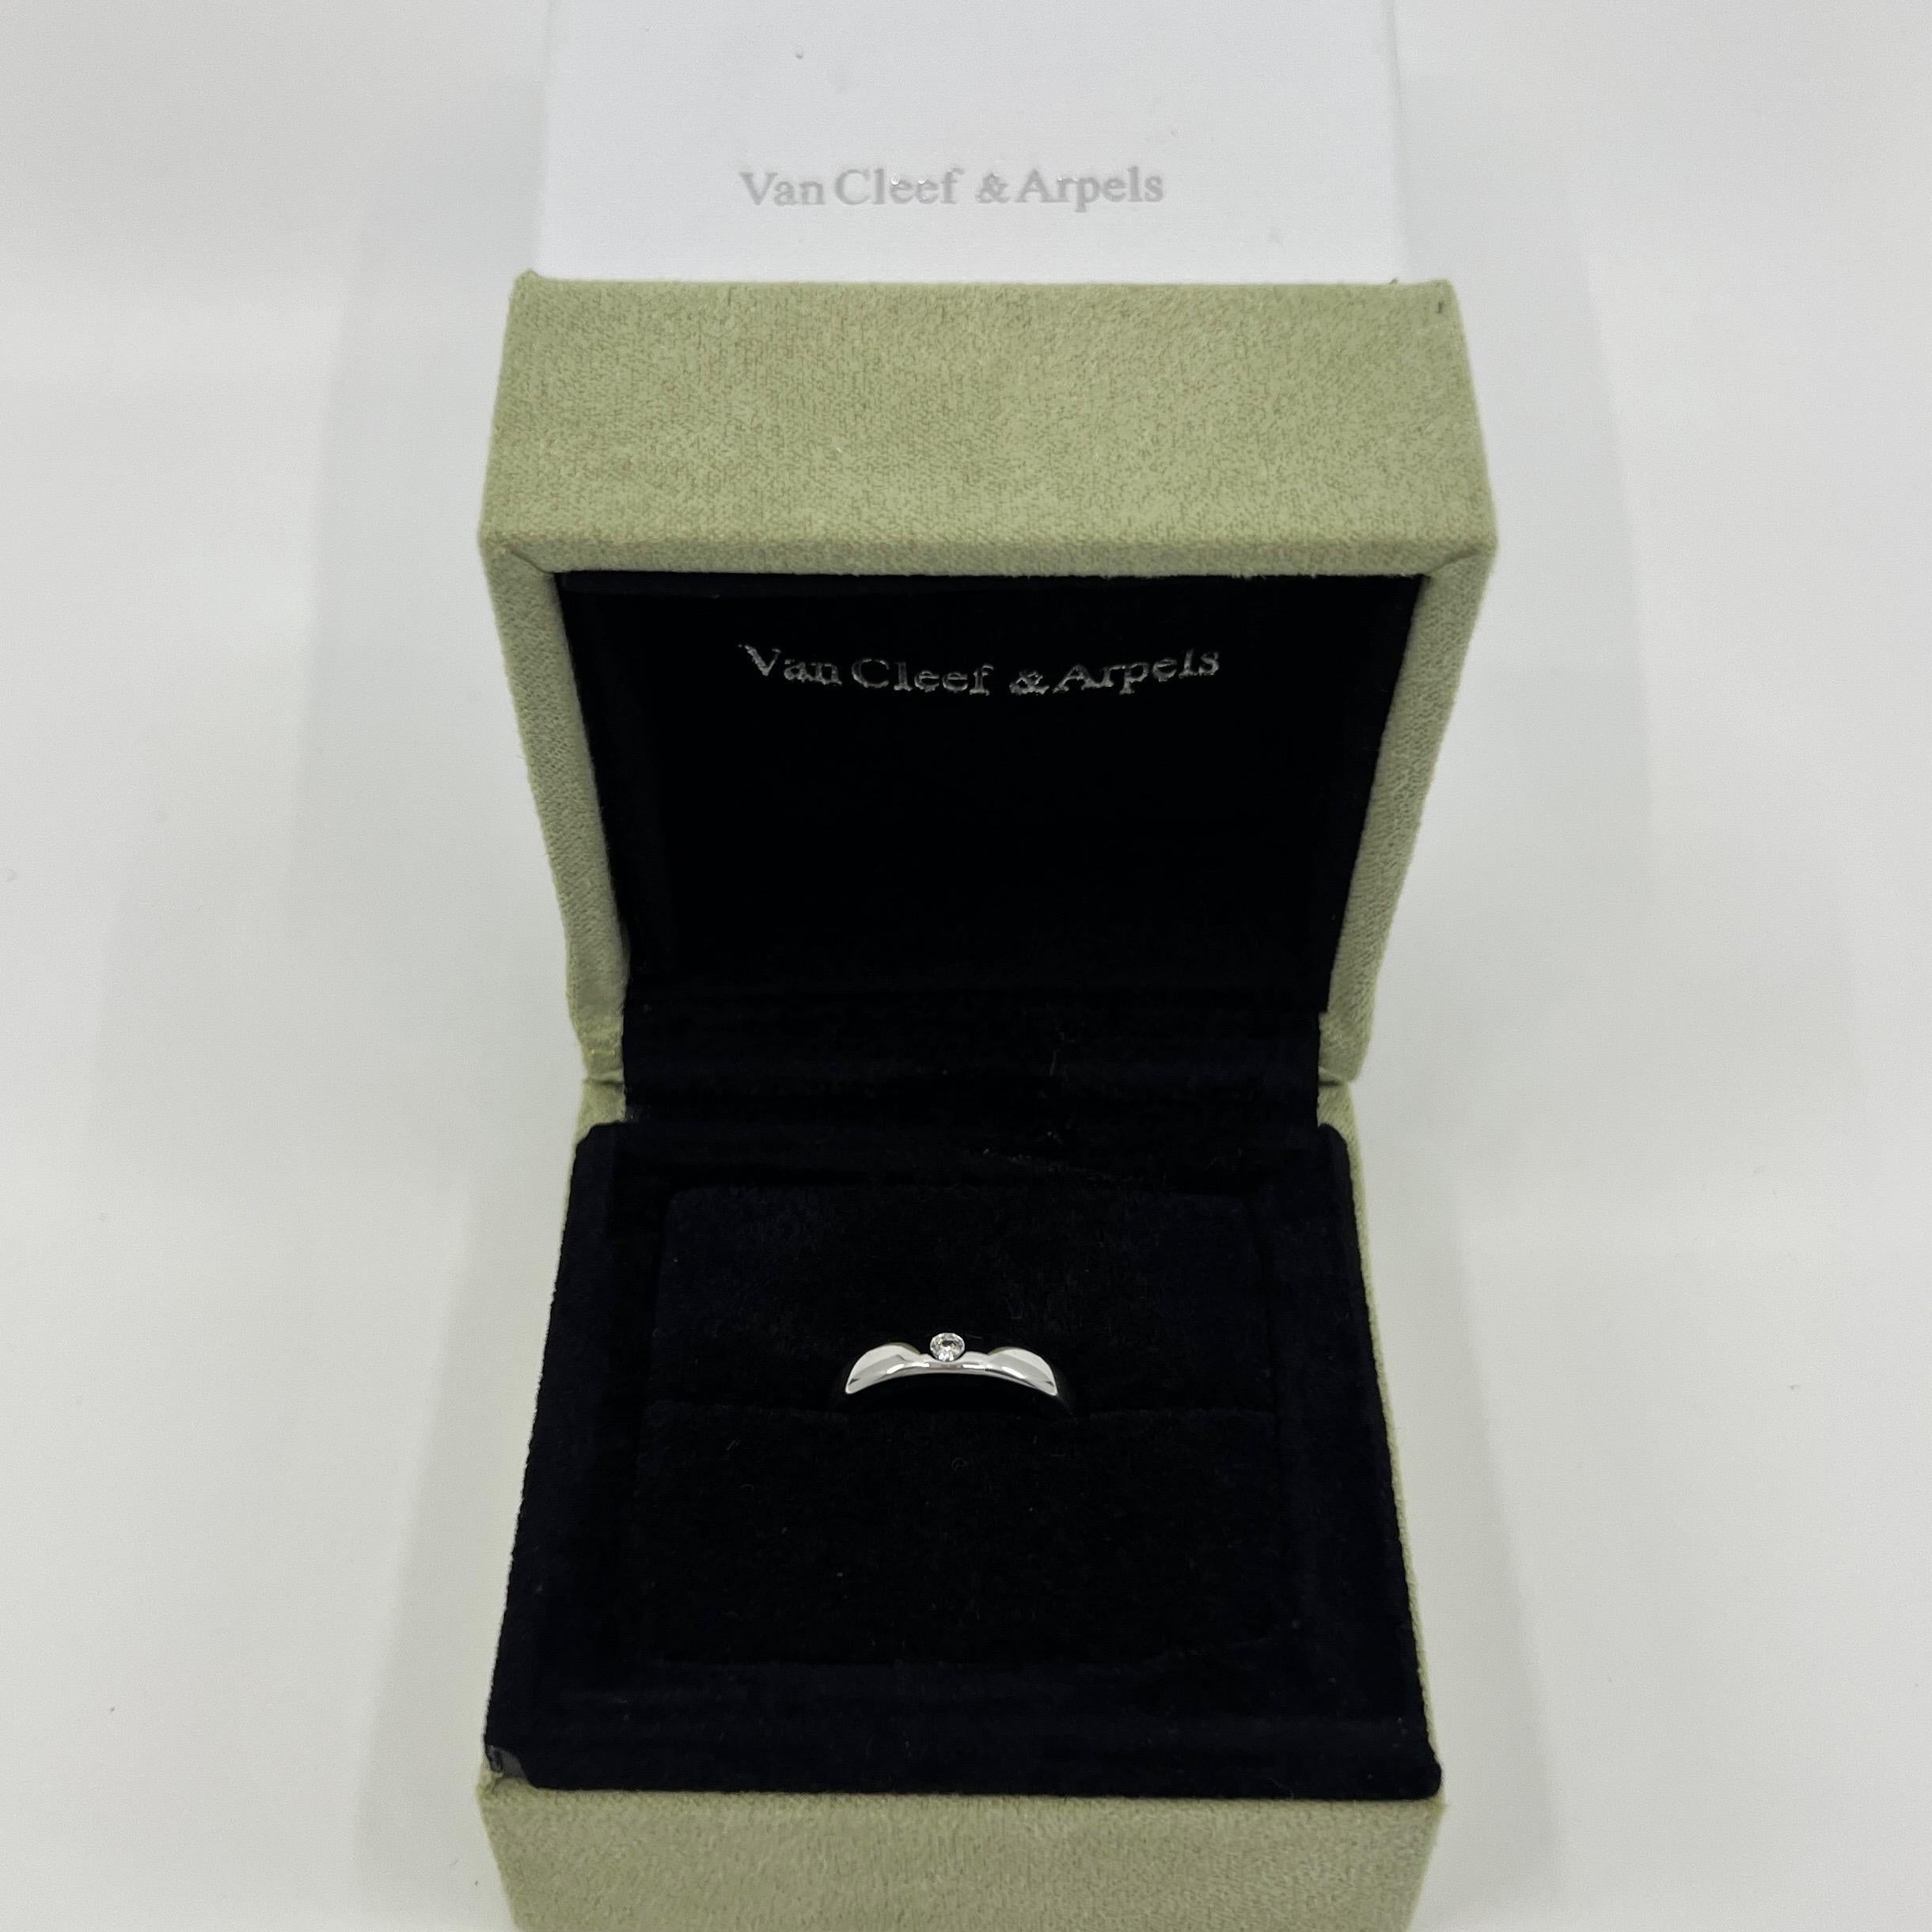 Van Cleef & Arpels New York Platin-Diamantband-Ring.

Ein klassischer Bandring aus der VCA New York Collection'S. Mit einem einzelnen bündig gefassten 2,5 mm großen weißen Naturdiamanten im Rundschliff besetzt.
Edle Juweliere wie Van Cleef & Arpels